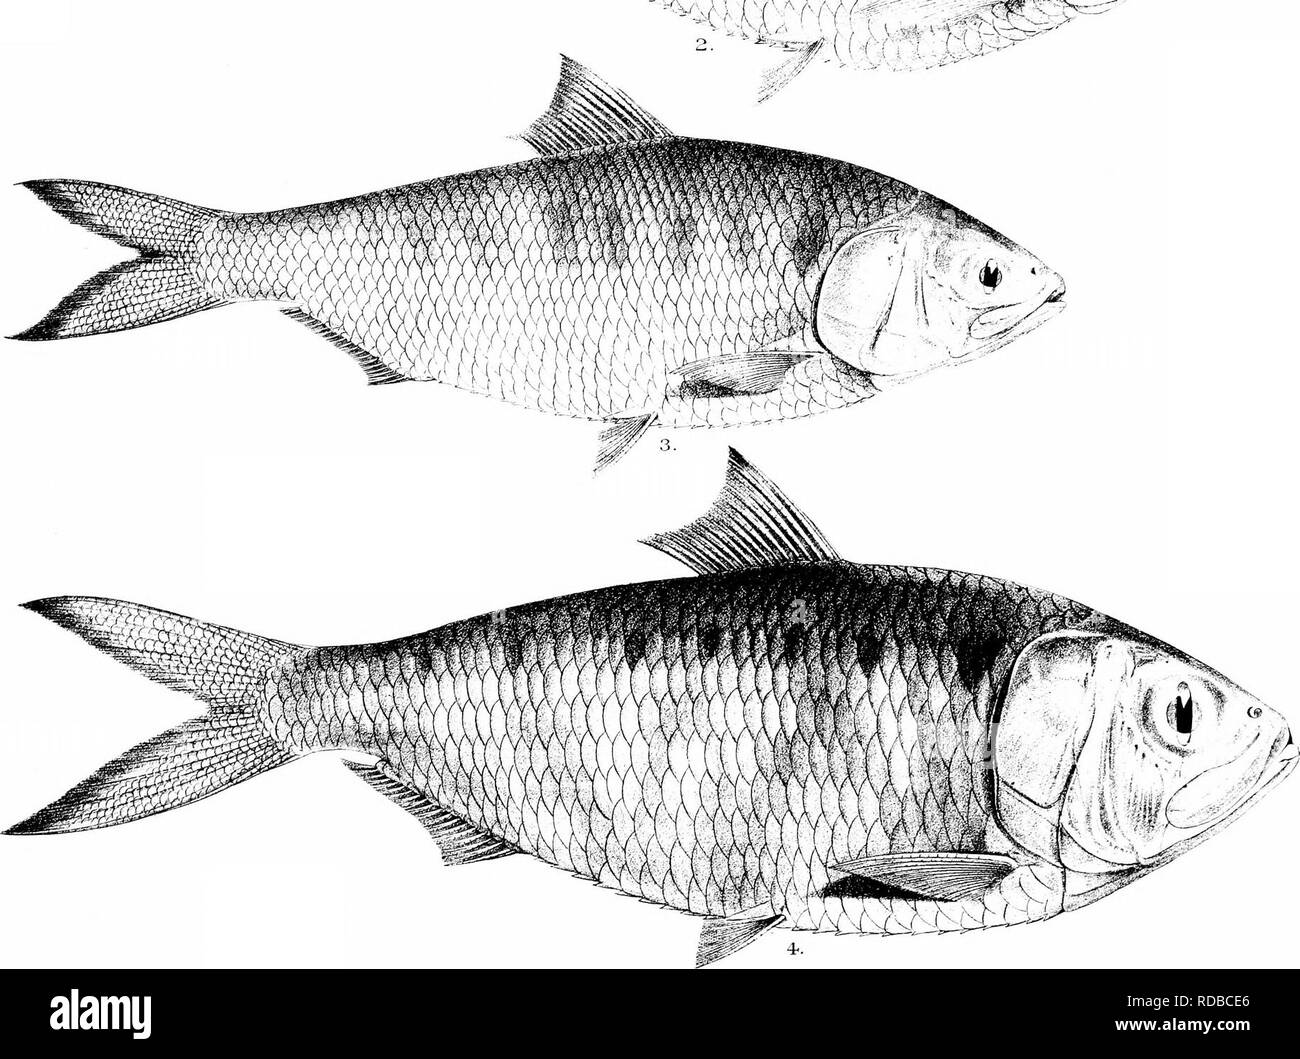 . Die Fische von Indien; eine Naturgeschichte der Fische bekannt, die Meere und Binnengewässer von Indien, Birma zu bewohnen, und Ceylon. Fische. % ^ '&gt; l^(Pf rill ICH! Ich, 'yti" 4 I f-------^%. C Achilles dol eMilh. ! Vanten - ich Bros. mp. 1. CLUPEA LILE. 2. C ABGABE 3. C. ILLSHA. 4. C. KANAGURTA. 5. CORICA SOBORNA.. Bitte beachten Sie, dass diese Bilder sind von der gescannten Seite Bilder, die digital für die Lesbarkeit verbessert haben mögen - Färbung und Aussehen dieser Abbildungen können nicht perfekt dem Original ähneln. extrahiert. Tag, Francis, 1829-1889. London, B. Quaritch Stockfoto